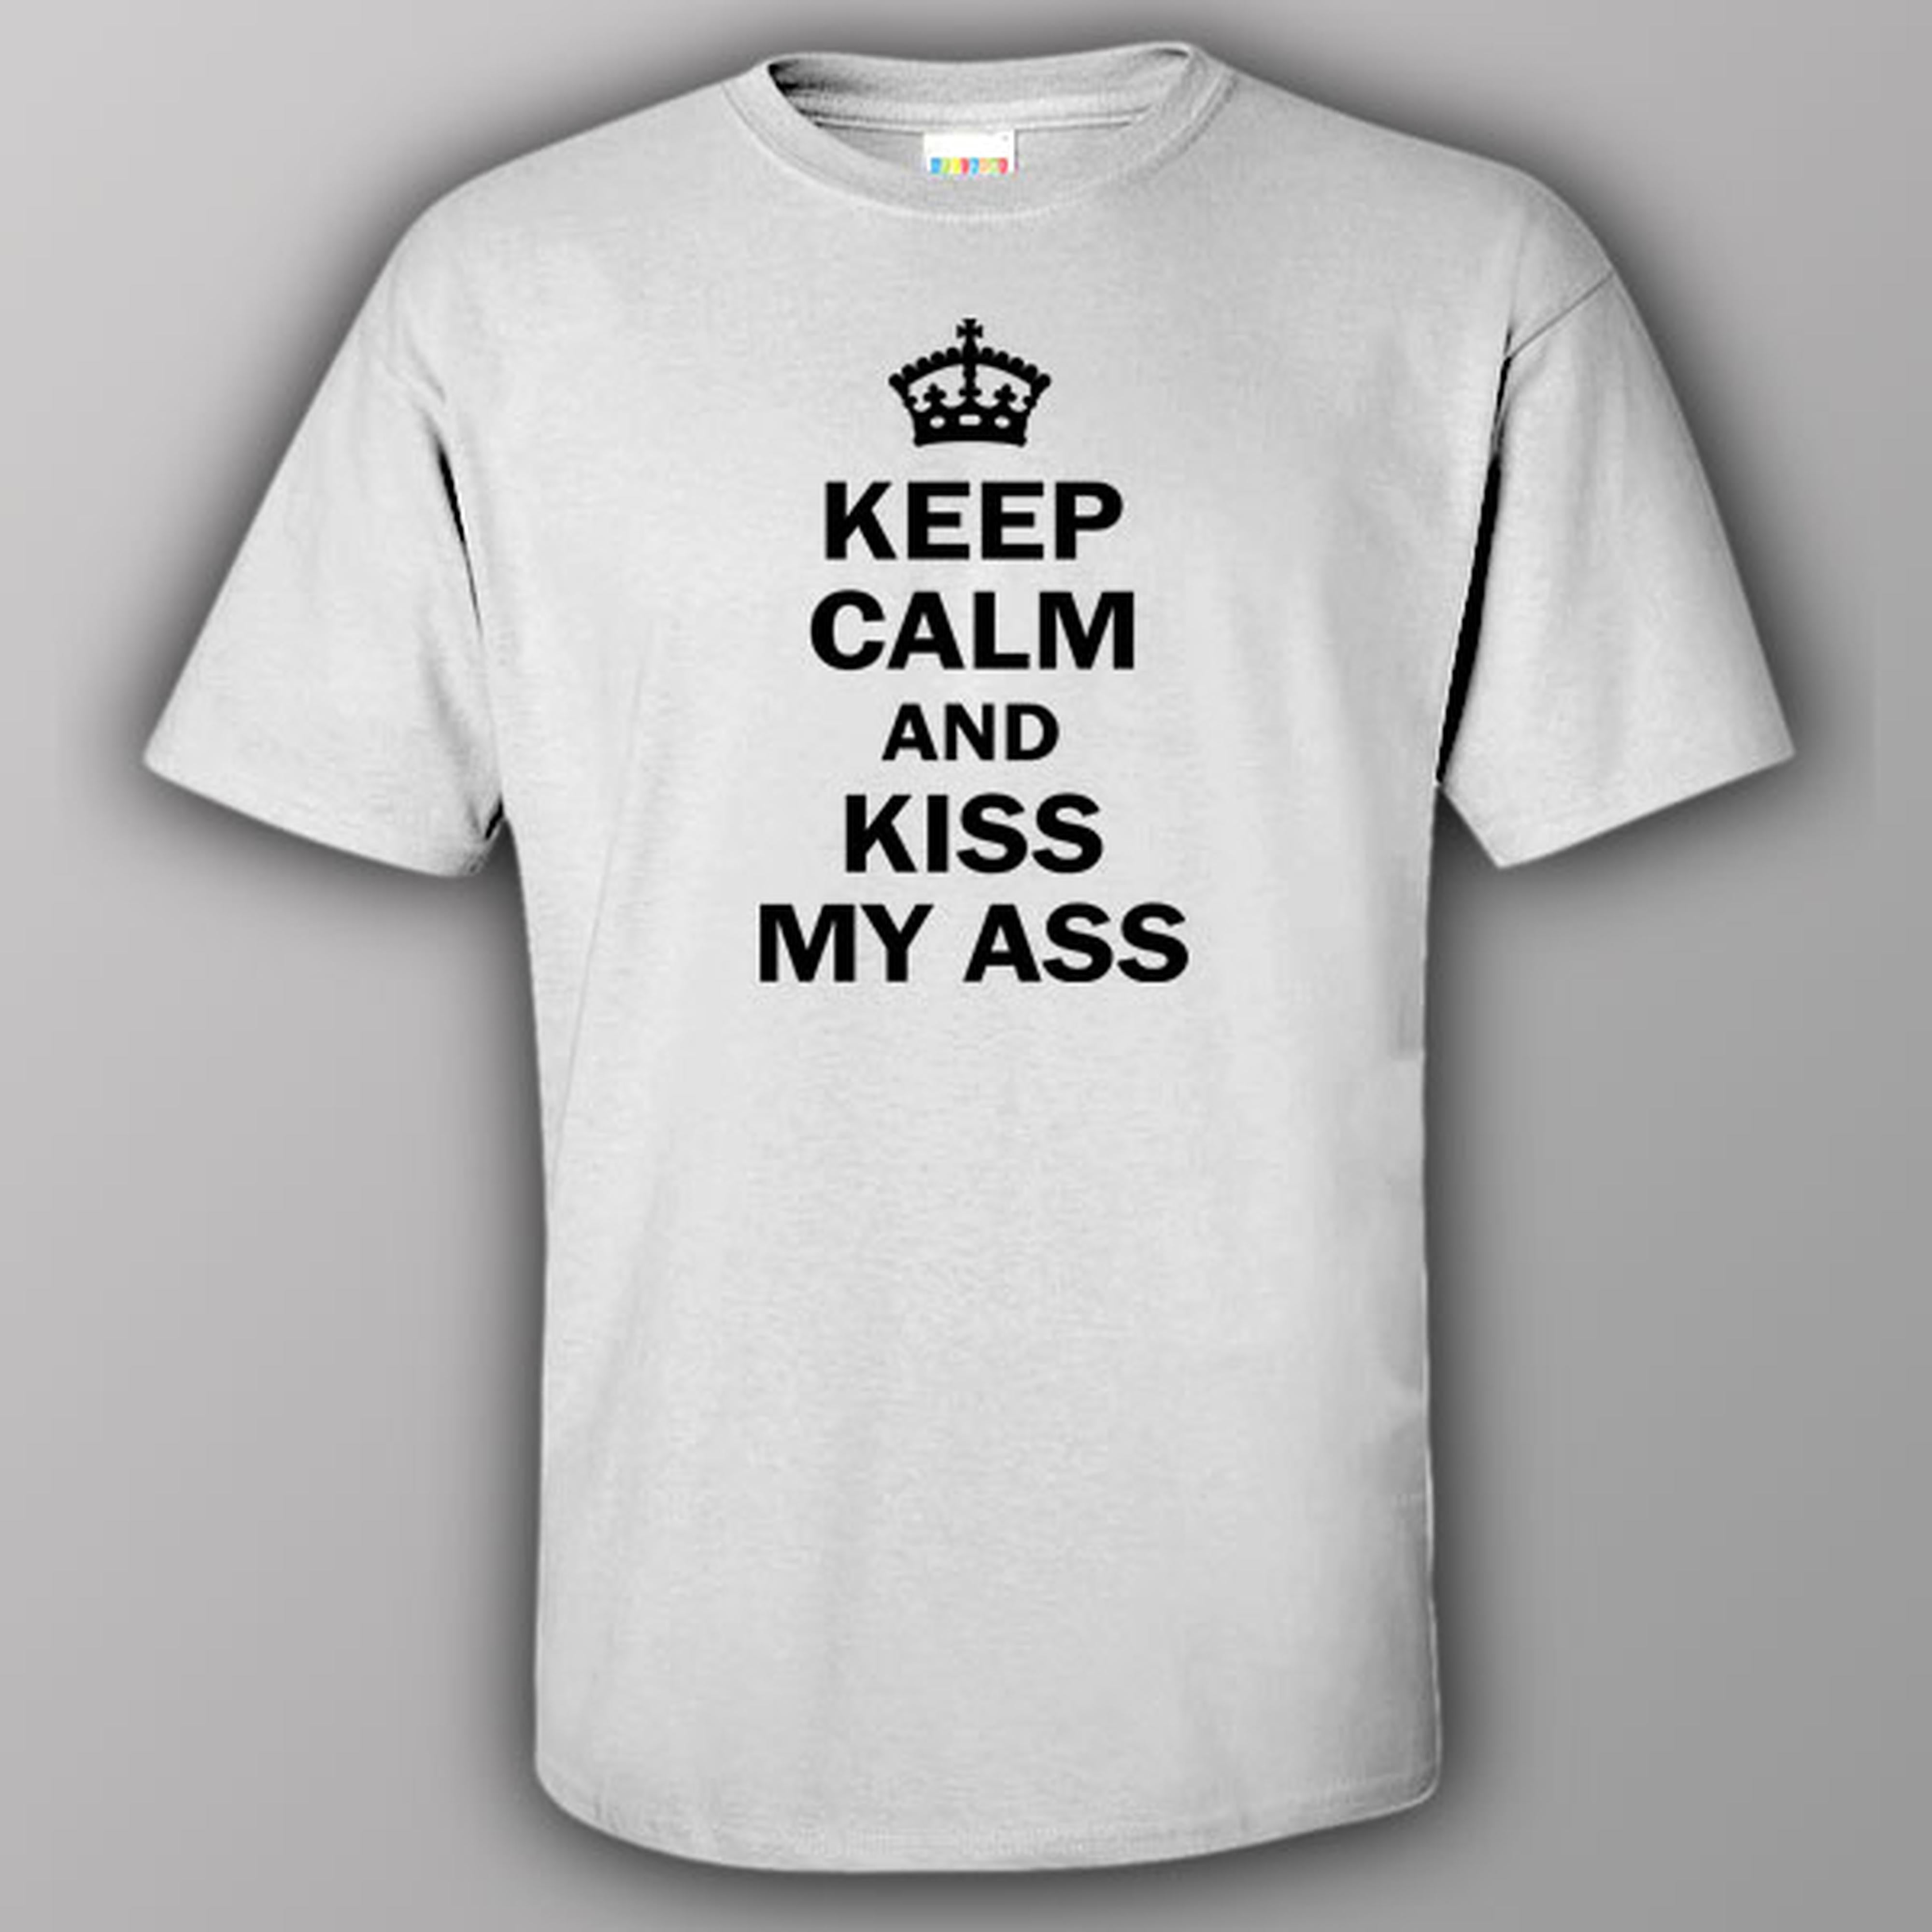 Keep calm and kiss my ass - T-shirt